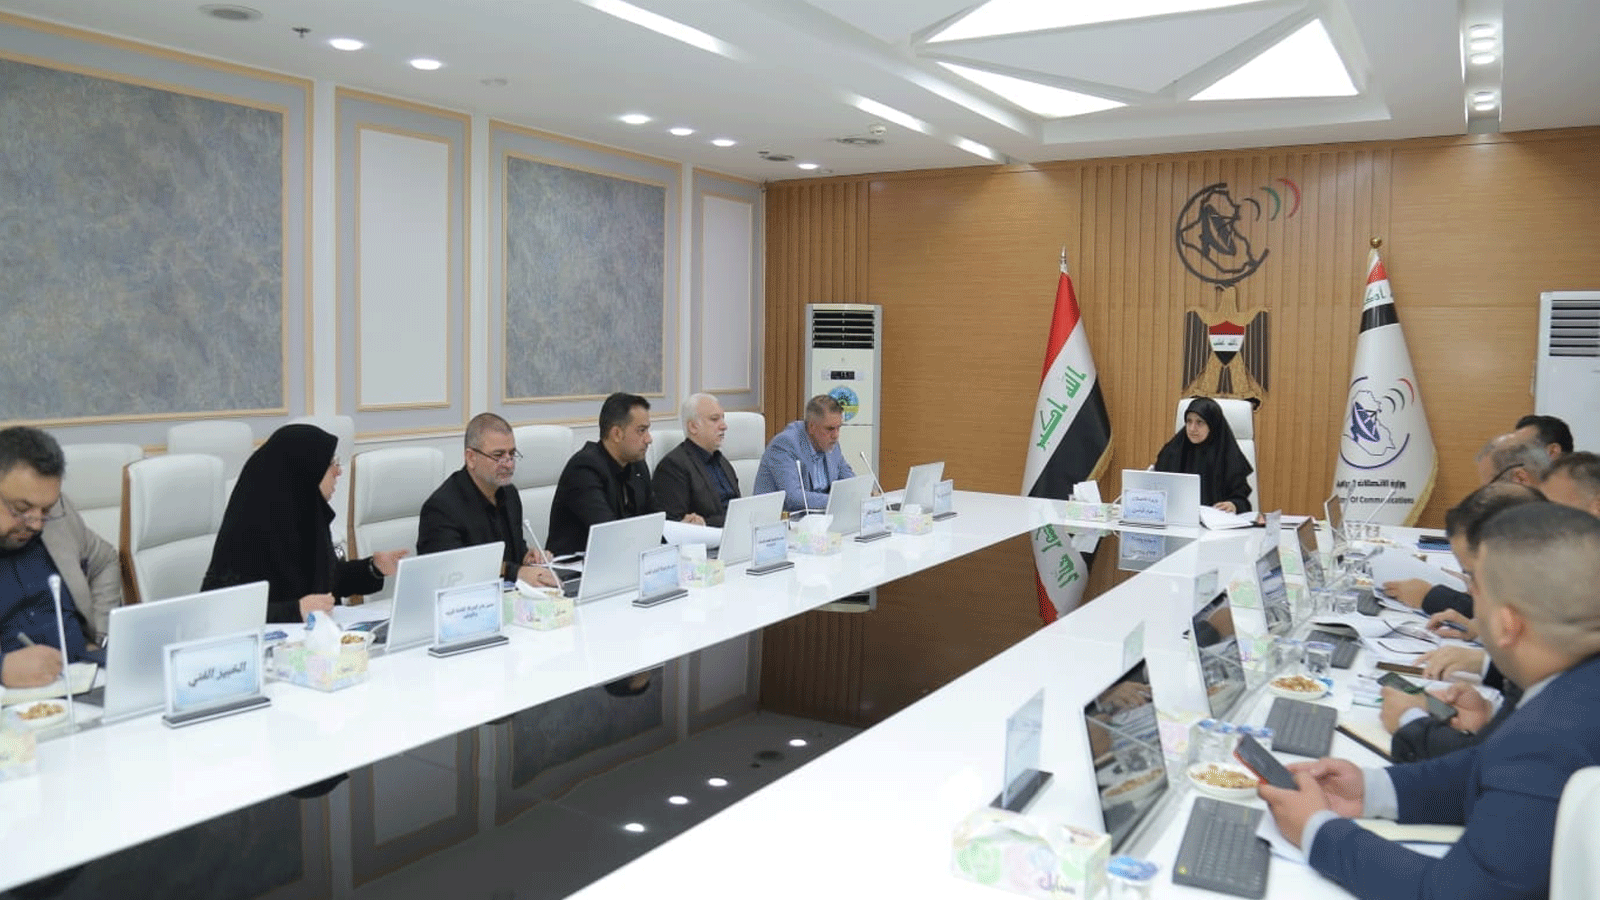 صورة لهيئة الرأي في وزارة الاتصالات العراقية نشرتها صفحة الوزارة الرسمية على فيسبوك